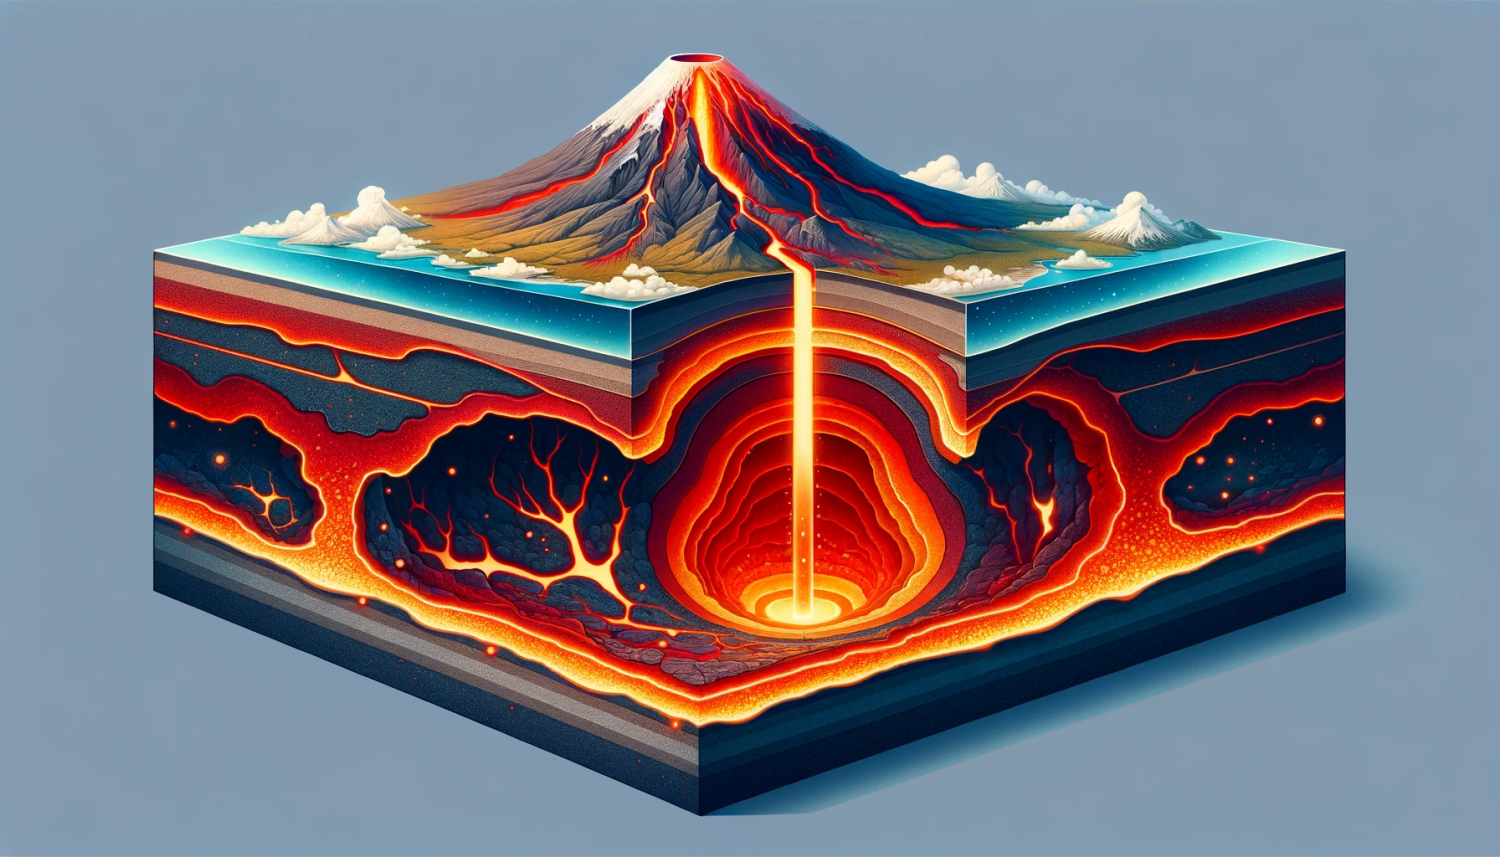 Magma: Nguồn năng lượng địa nhiệt vô tận